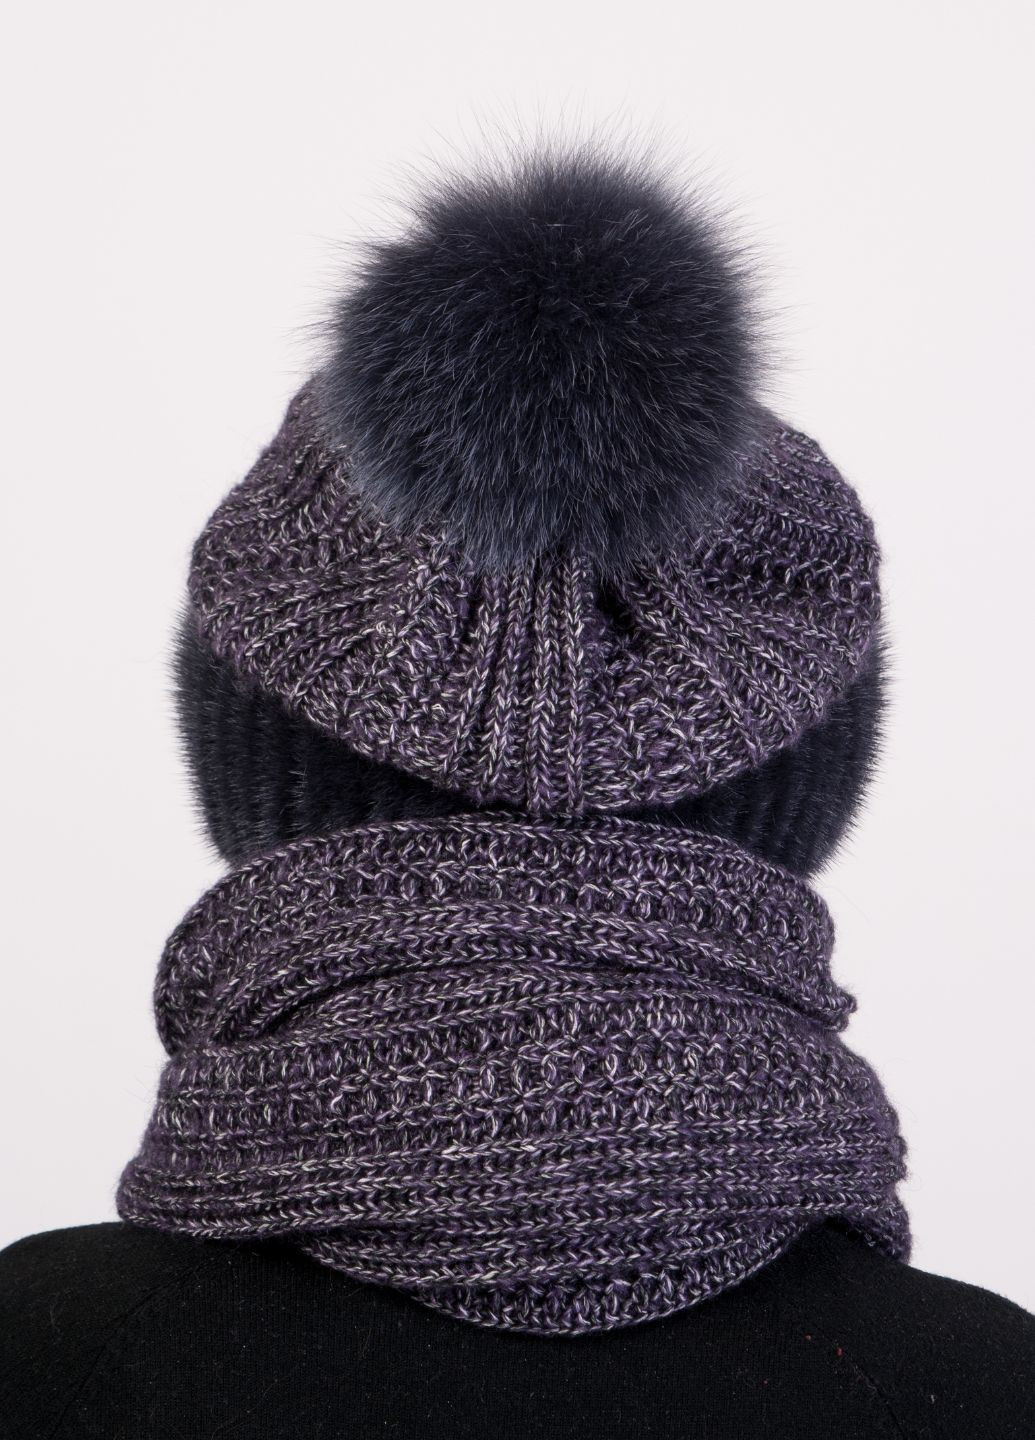 Вязаный норковый комплект шапка + шарф Меховой Стиль снуд (271556759)